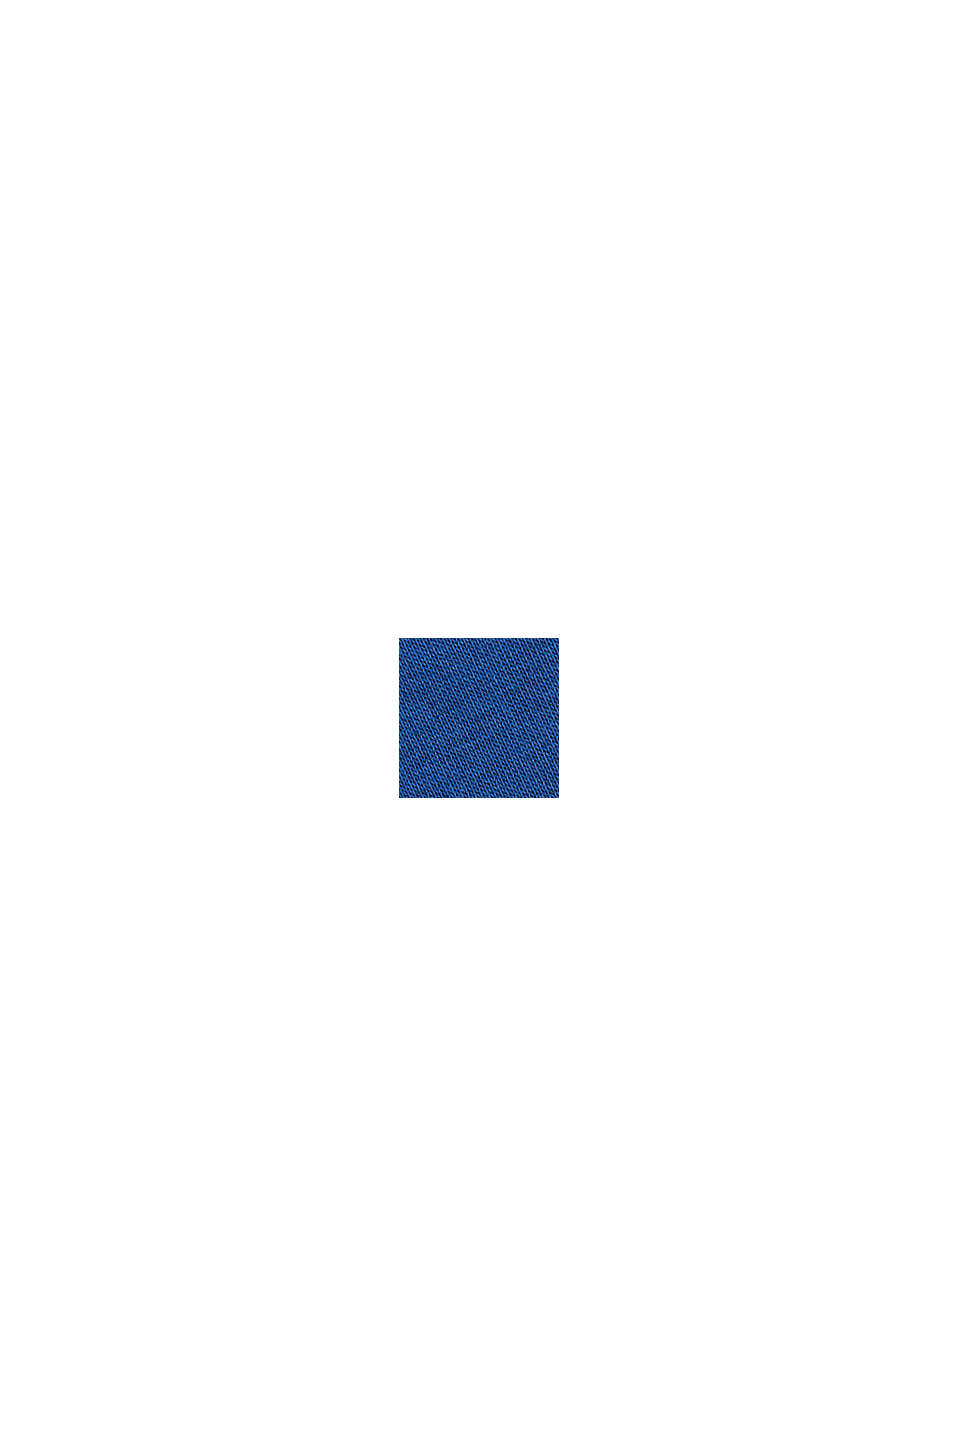 Sudadera con bordado del logotipo, mezcla de algodón, BRIGHT BLUE, swatch